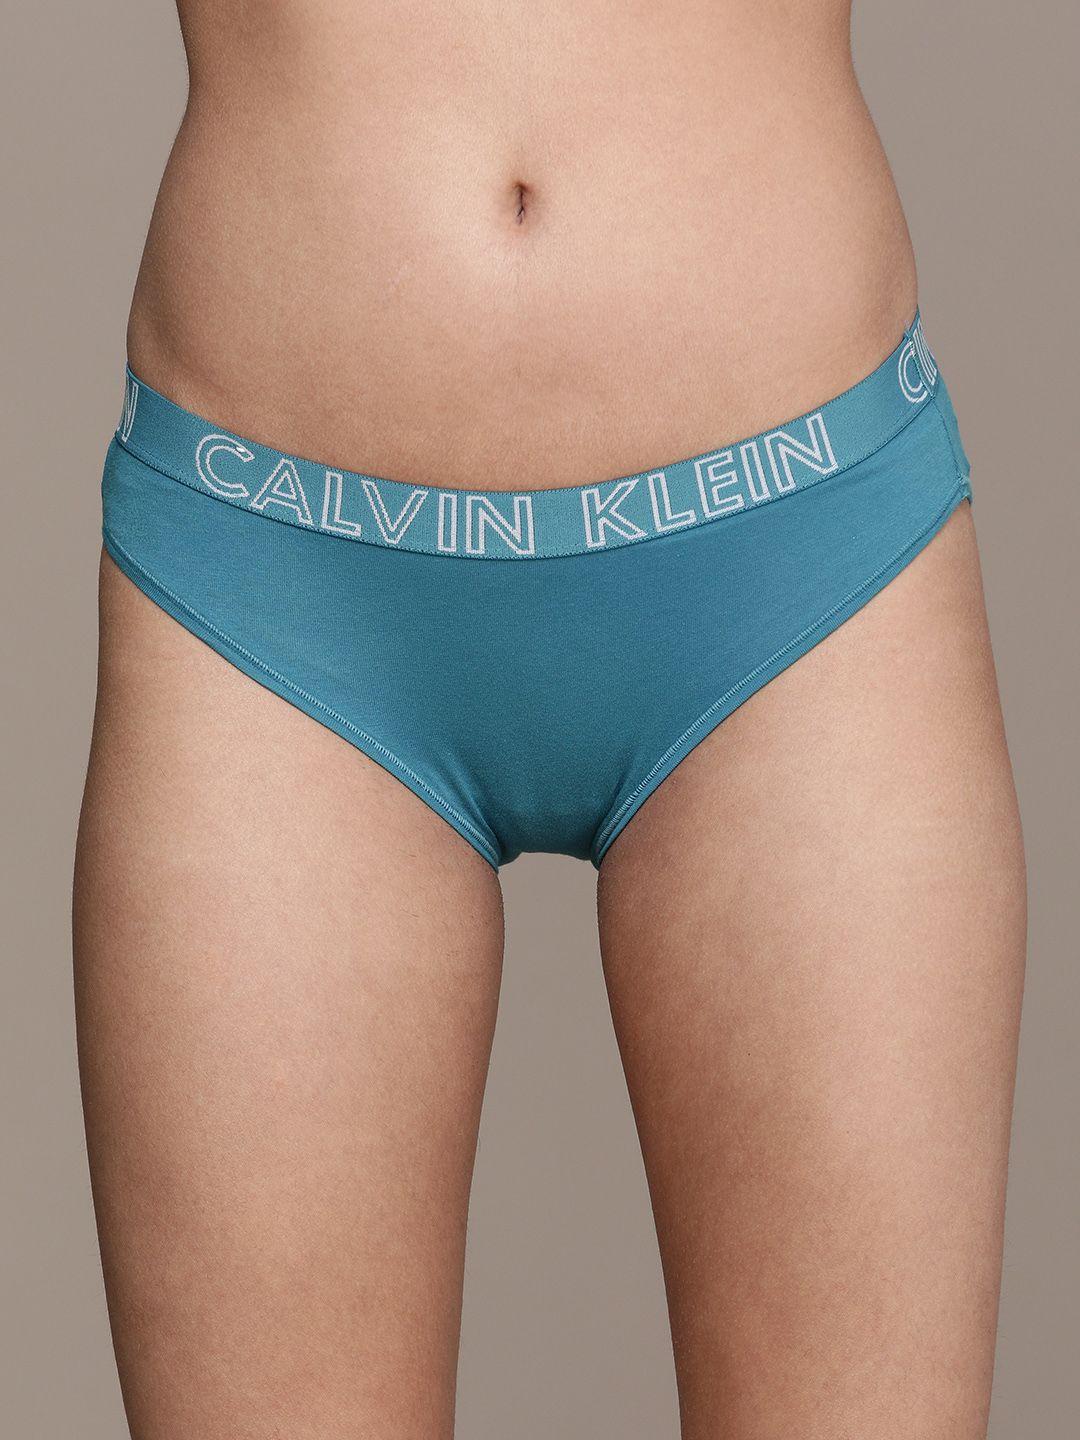 calvin klein underwear women teal solid bikini briefs